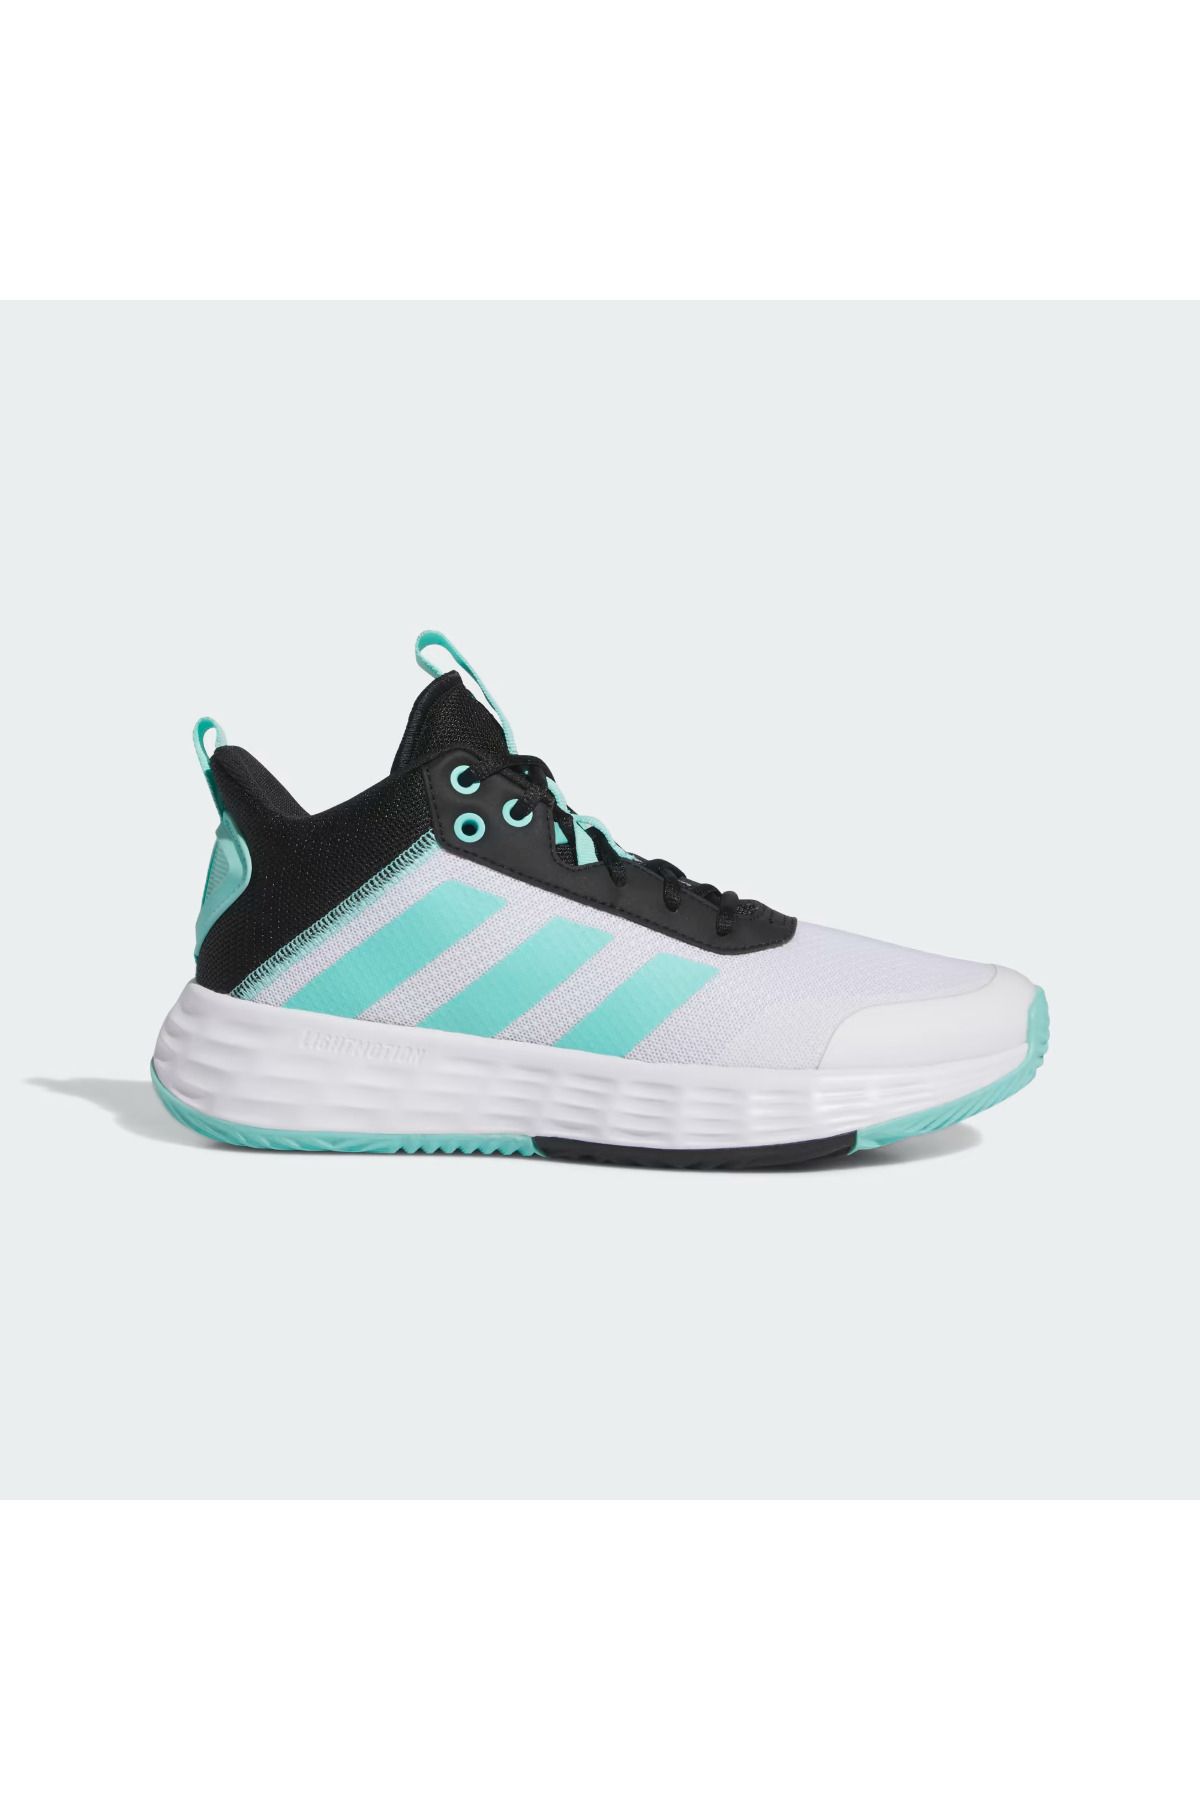 adidas Ownthegame 2.0 Erkek Mavi Basketbol Ayakkabısı